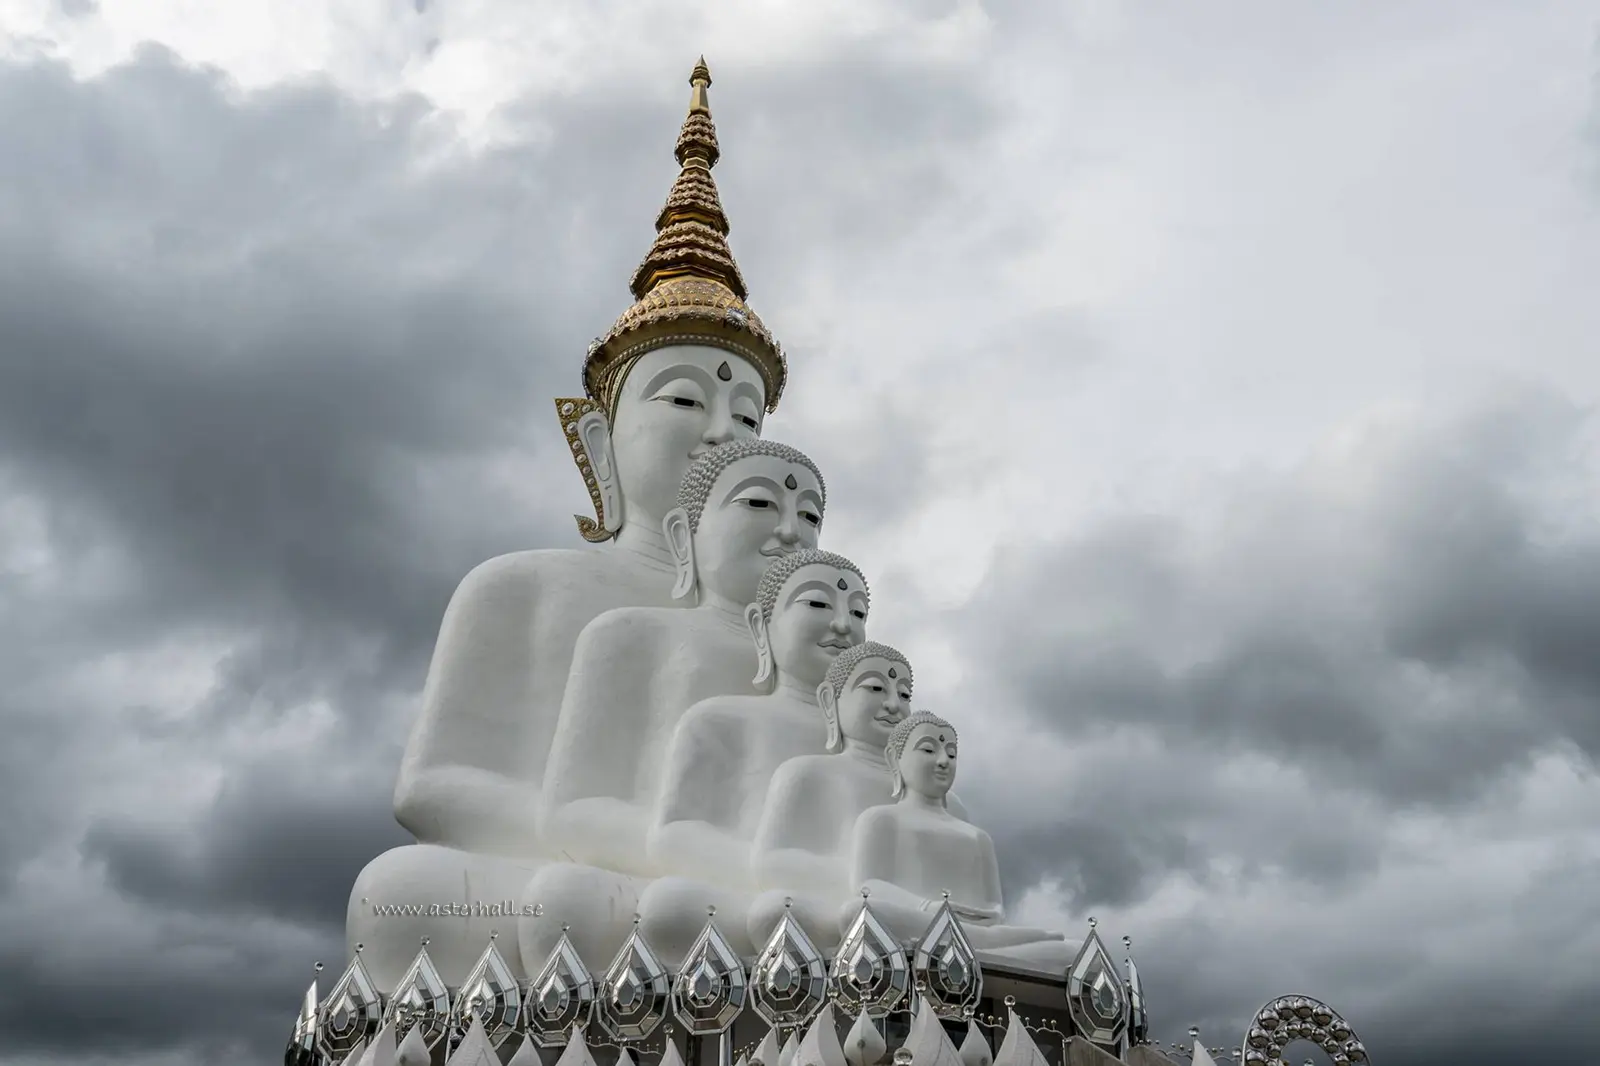 5 Buddha near Korat Thailand